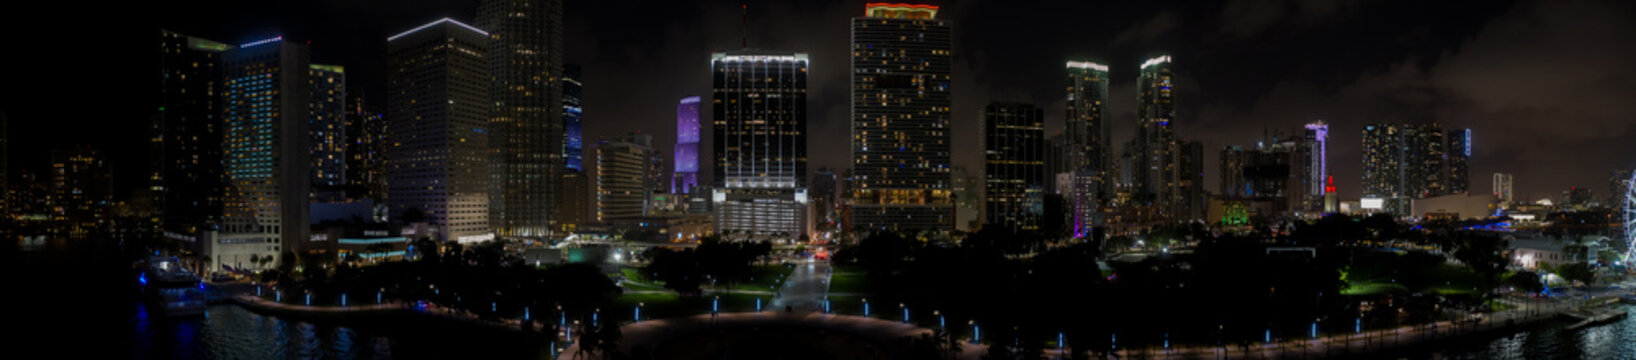 Night aerial panorama Downtown Miami city lights